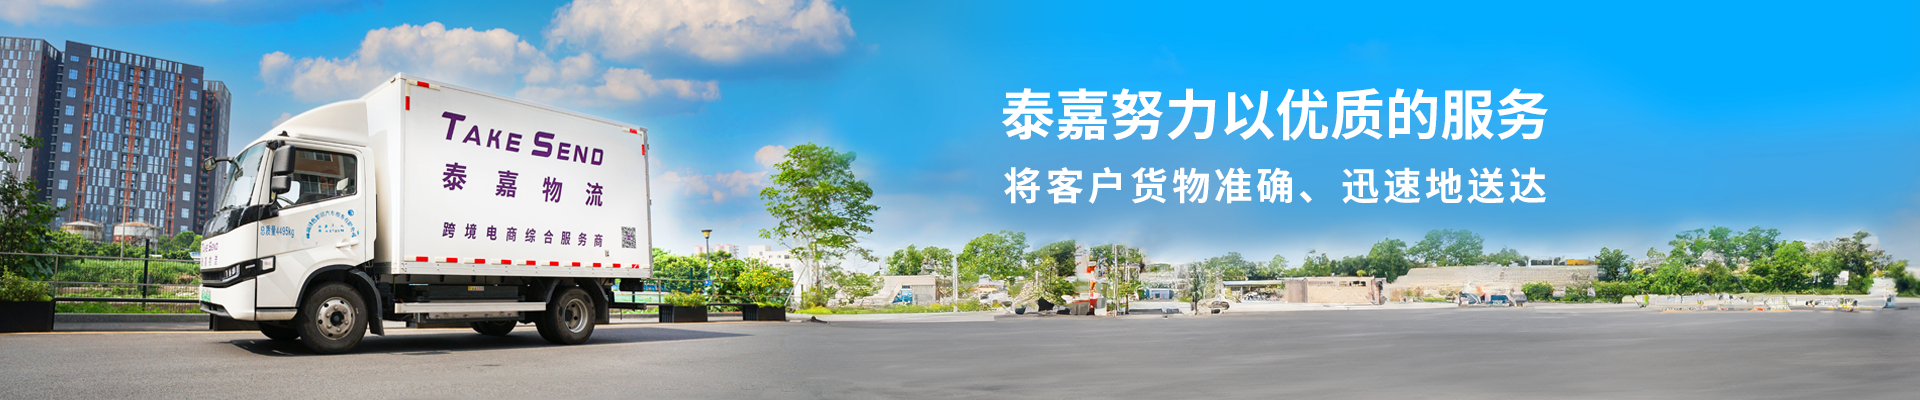 深圳泰嘉物流公司致力于提供專業優質的國際快遞服務1